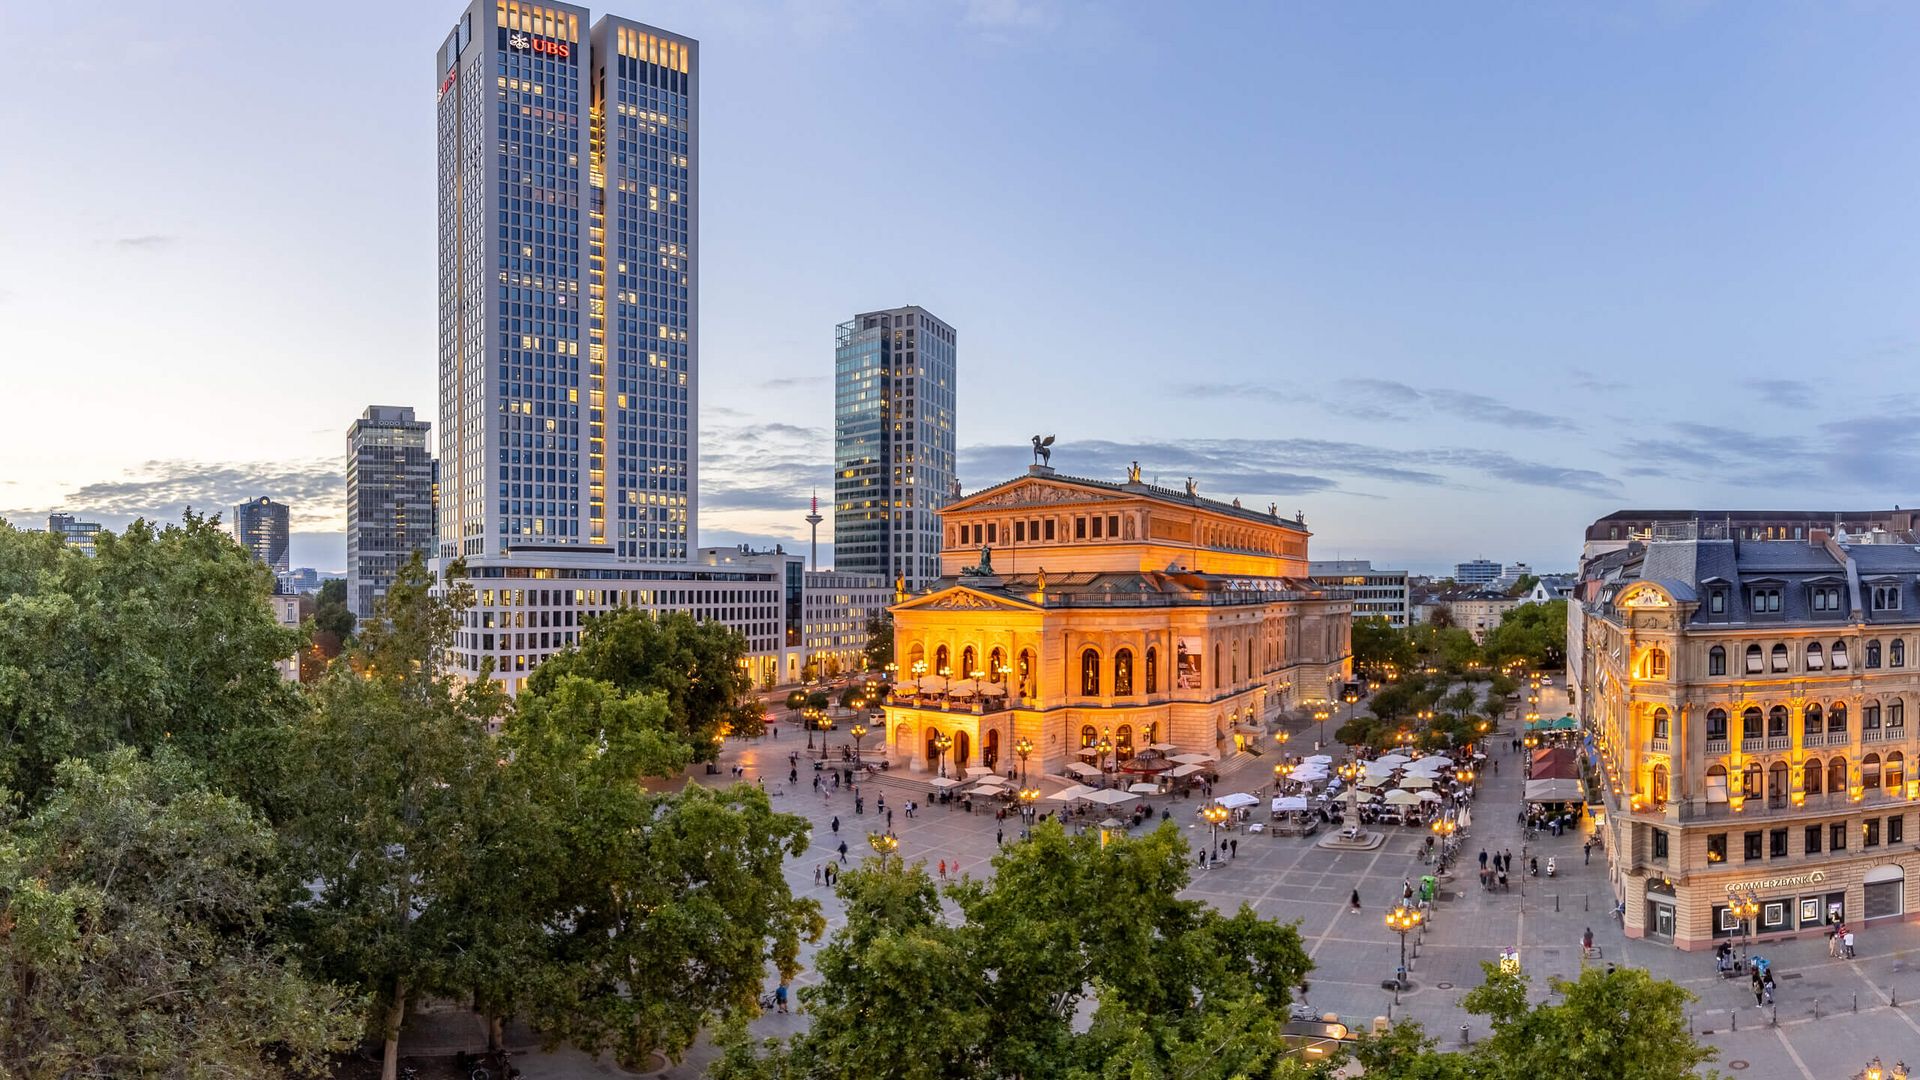 Panoramabild mit Alter Oper, Hochhaus und schönen Altbauten, Laternen tauchen den Platz in gelbes Licht, Abendstimmung.